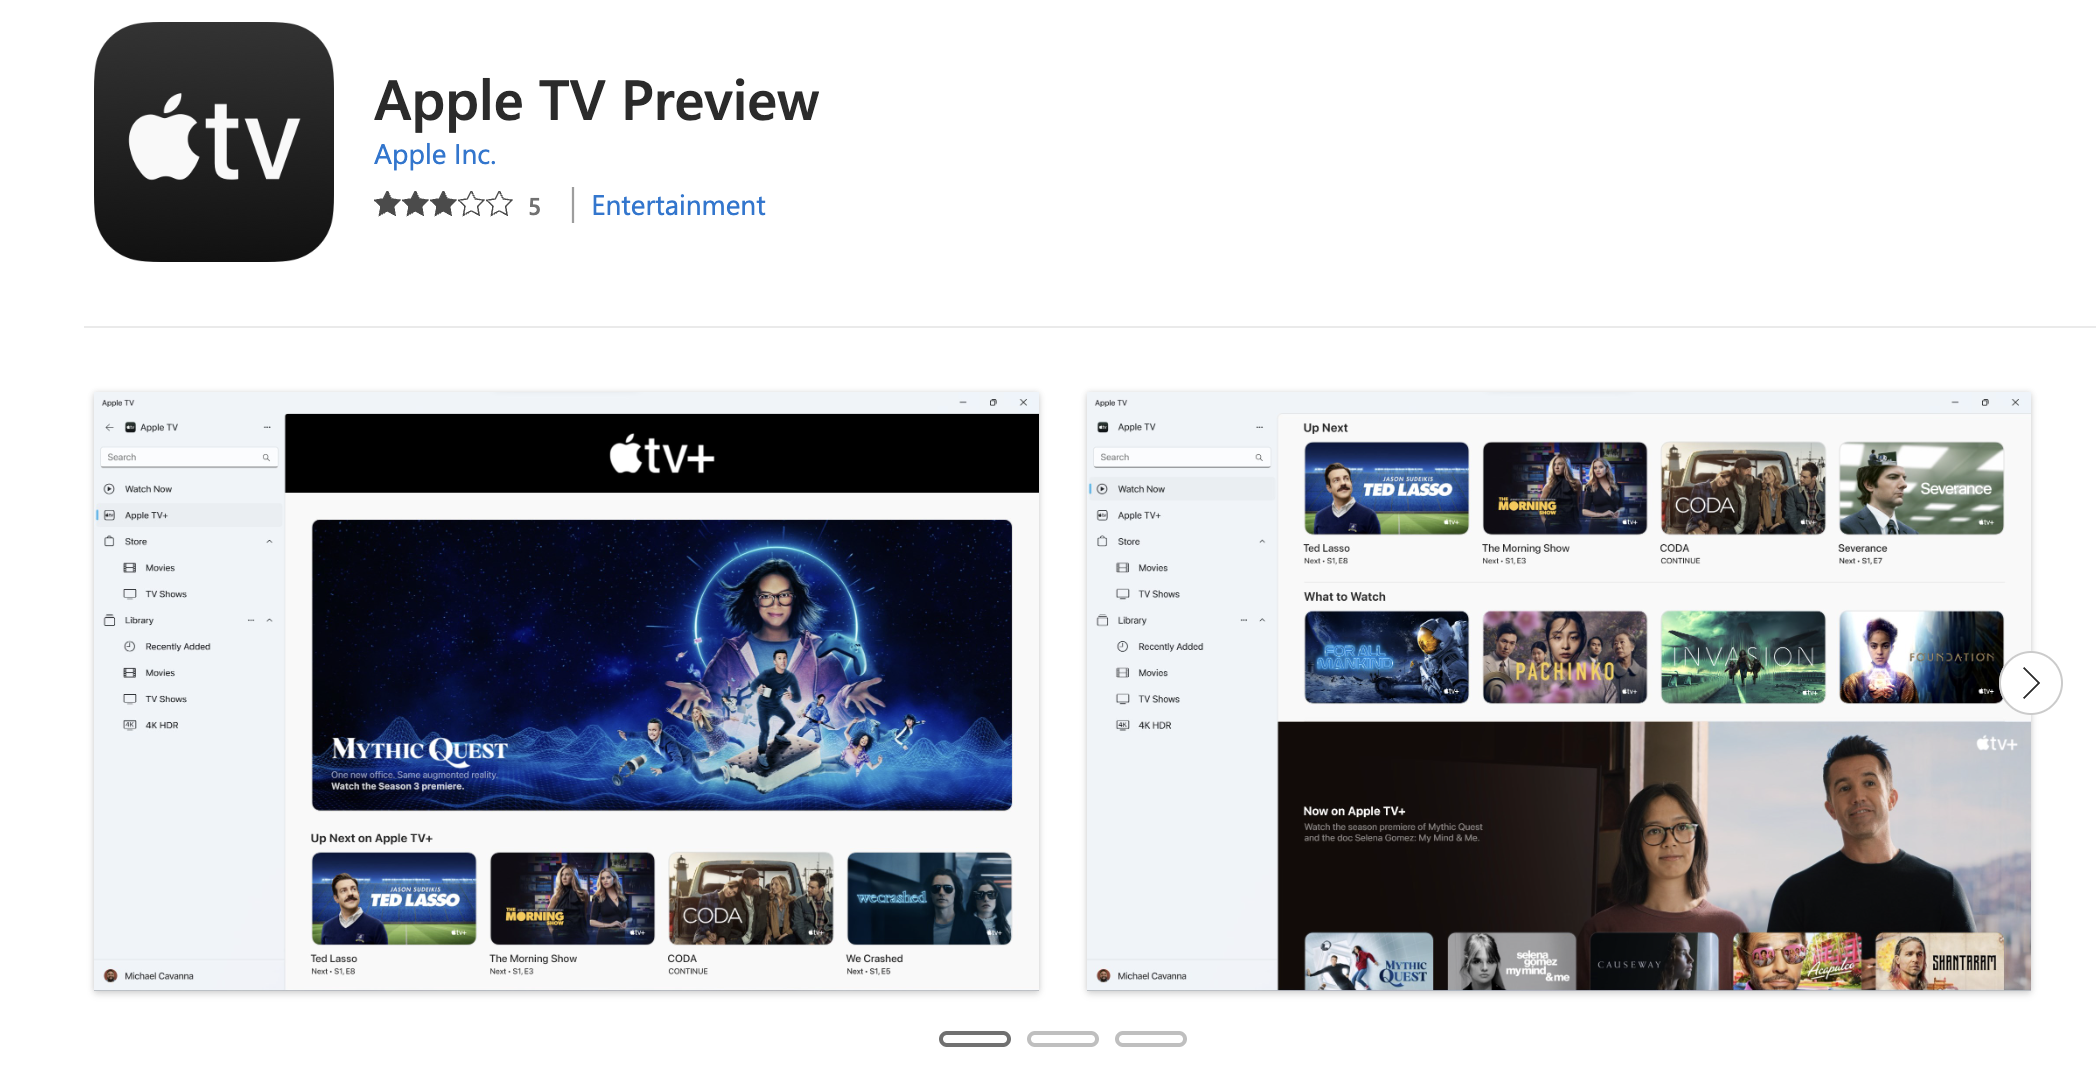 La página de la tienda para la vista previa de Apple TV 